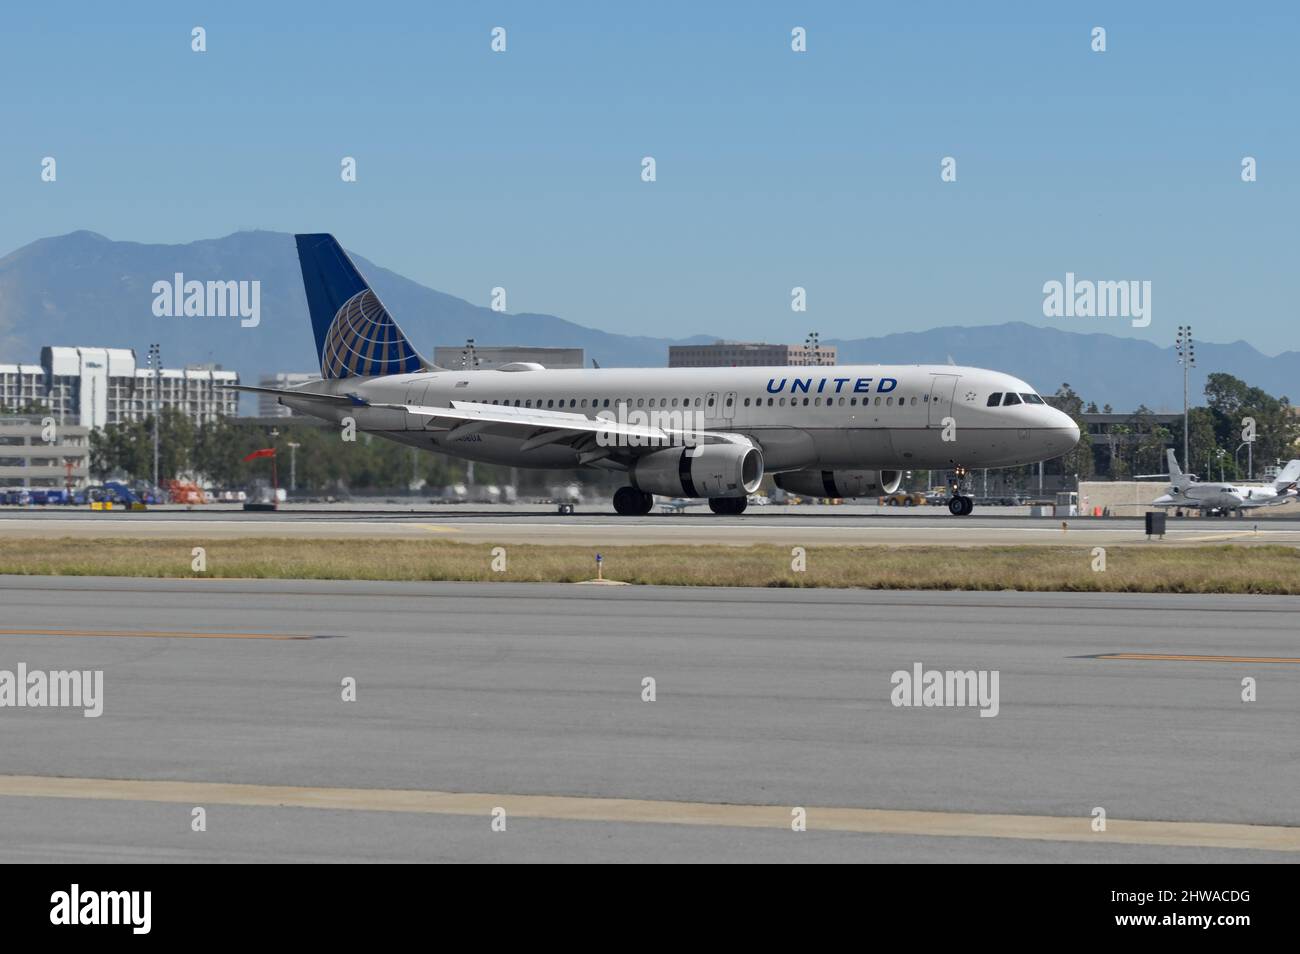 Aeroporto John Wayne, California: United Airlines Airbus A320-232 con registrazione N456UA mostrato rullaggio. Foto Stock